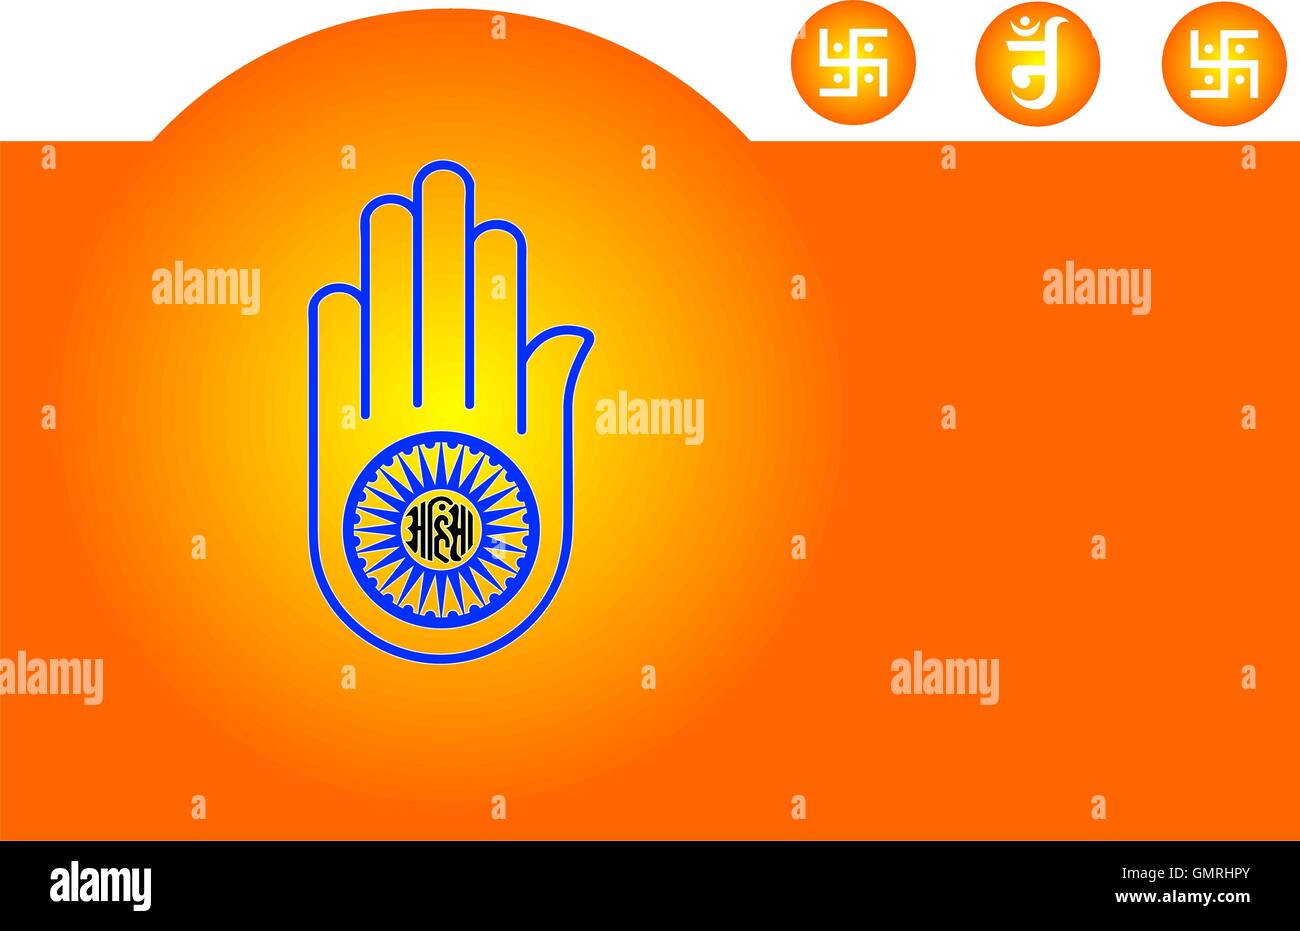 Jain Emblem, Flag, Swastica Stock Vector